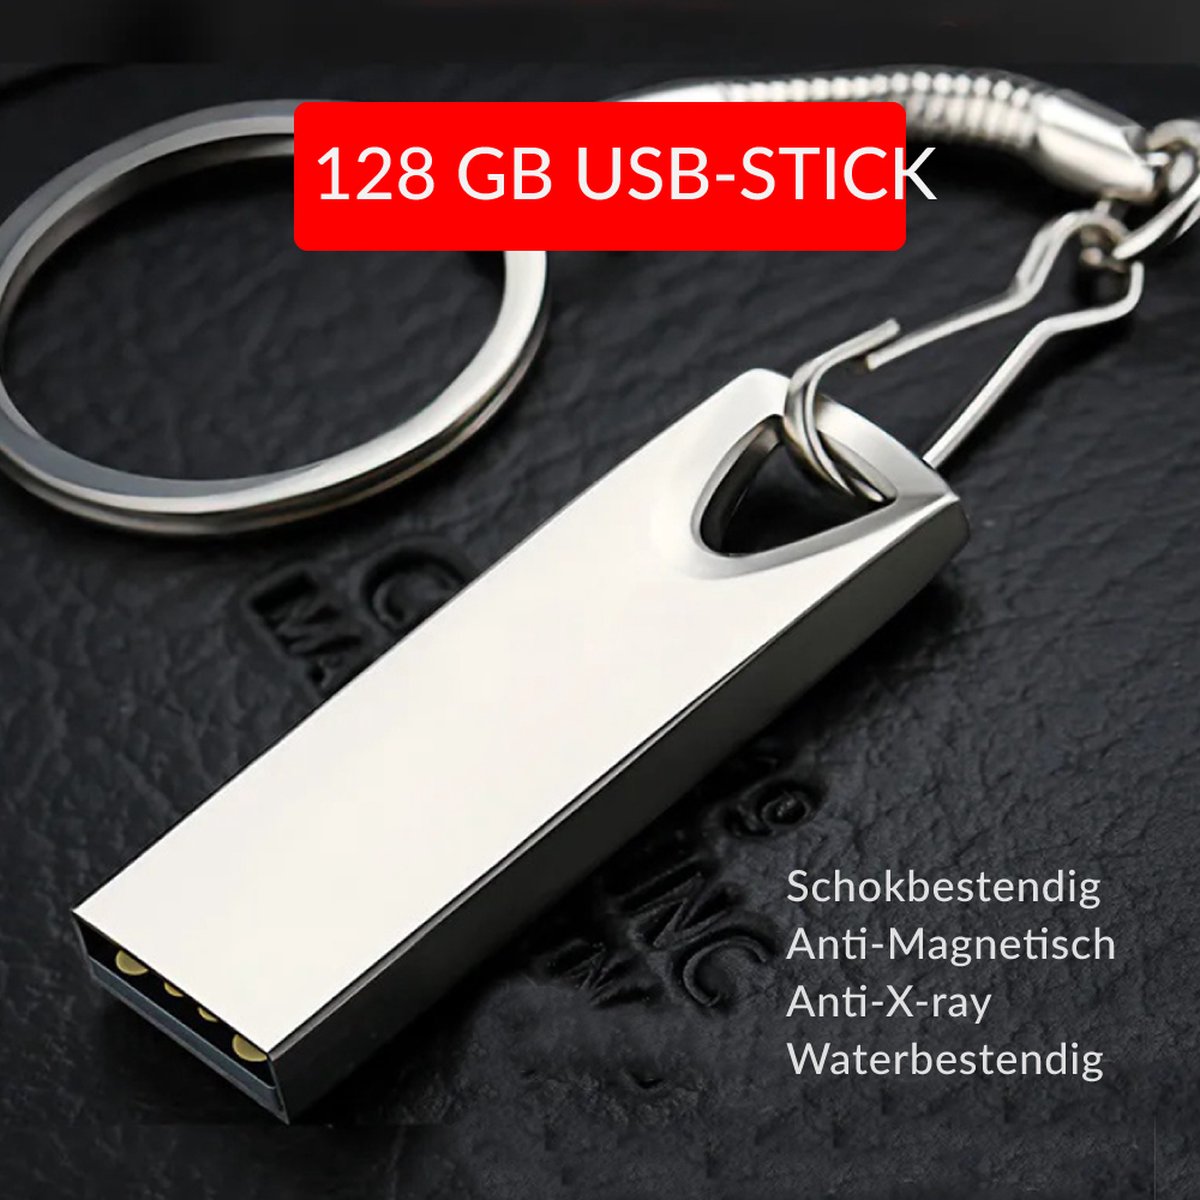 USB-Stick 128GB Metal | 4cm bij 2cm | USB 2.0 | Robuust Metalen Legering | Ziet er stijlvol uit | Makkelijk aan een sleutelbos vast te maken | 1 Jaar Garantie